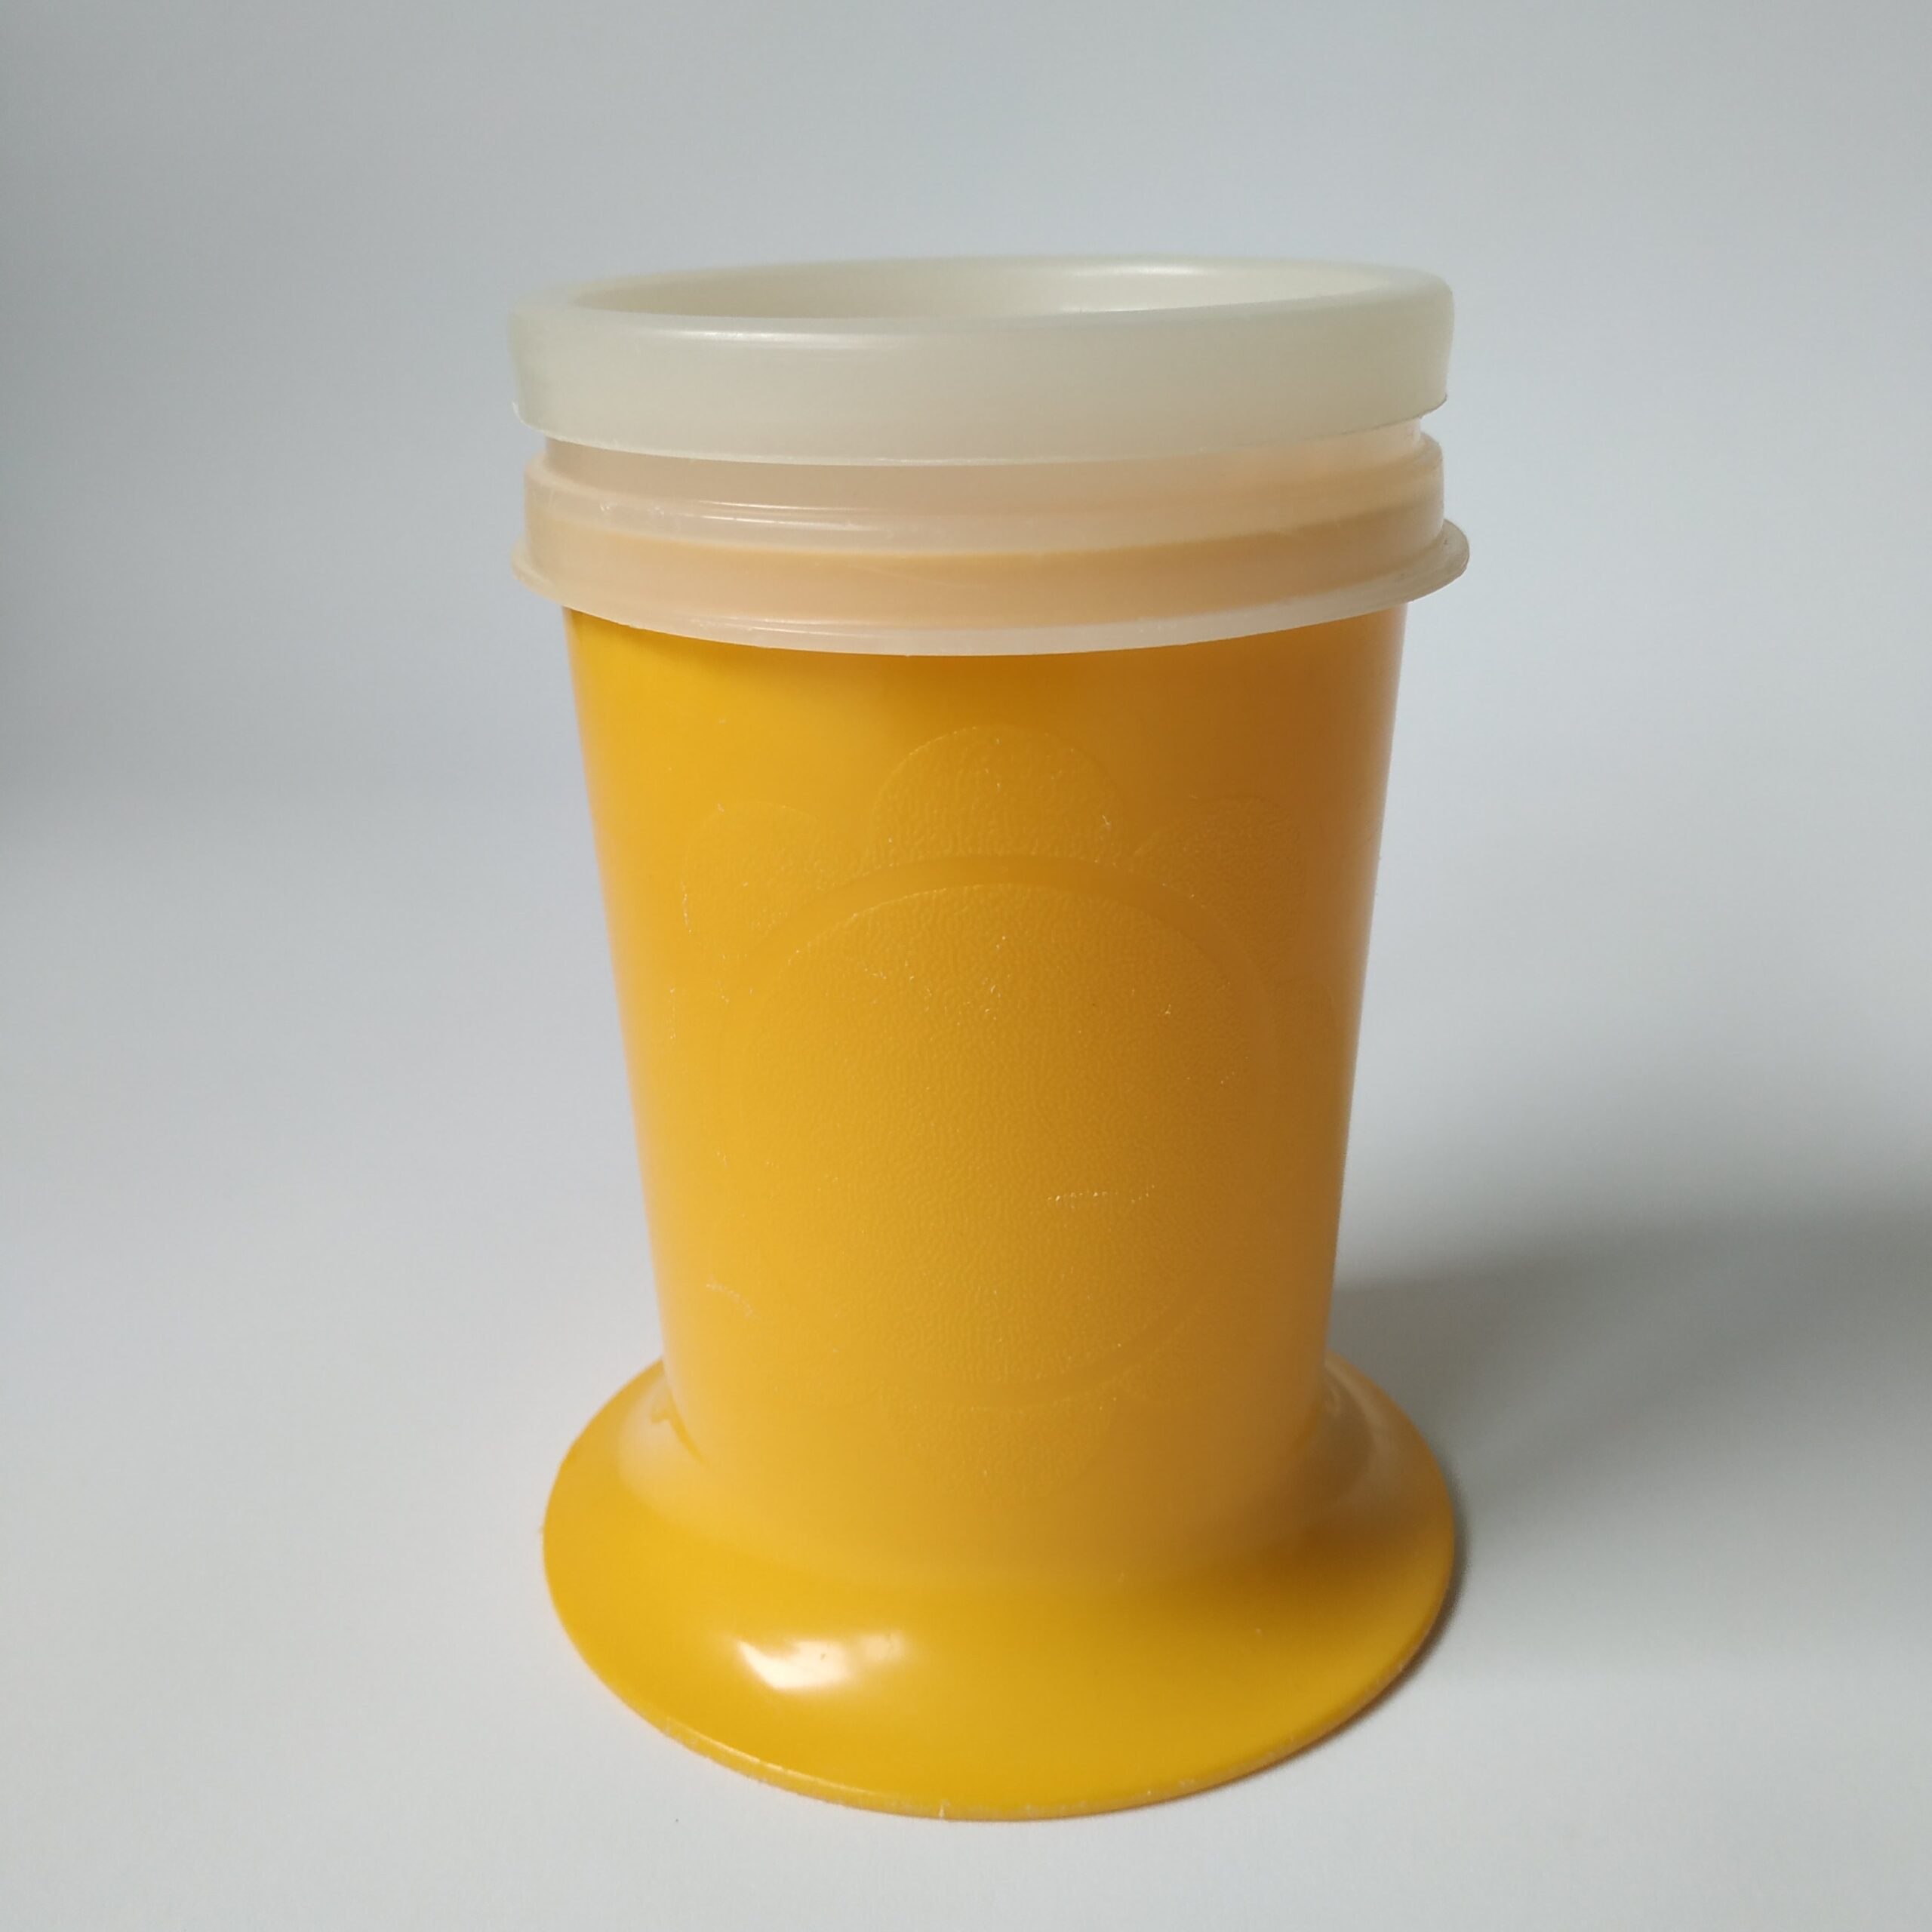 Kinderbeker Tupperware in de kleur geel – afsluitbaar – hoogte 11,5 cm (1)